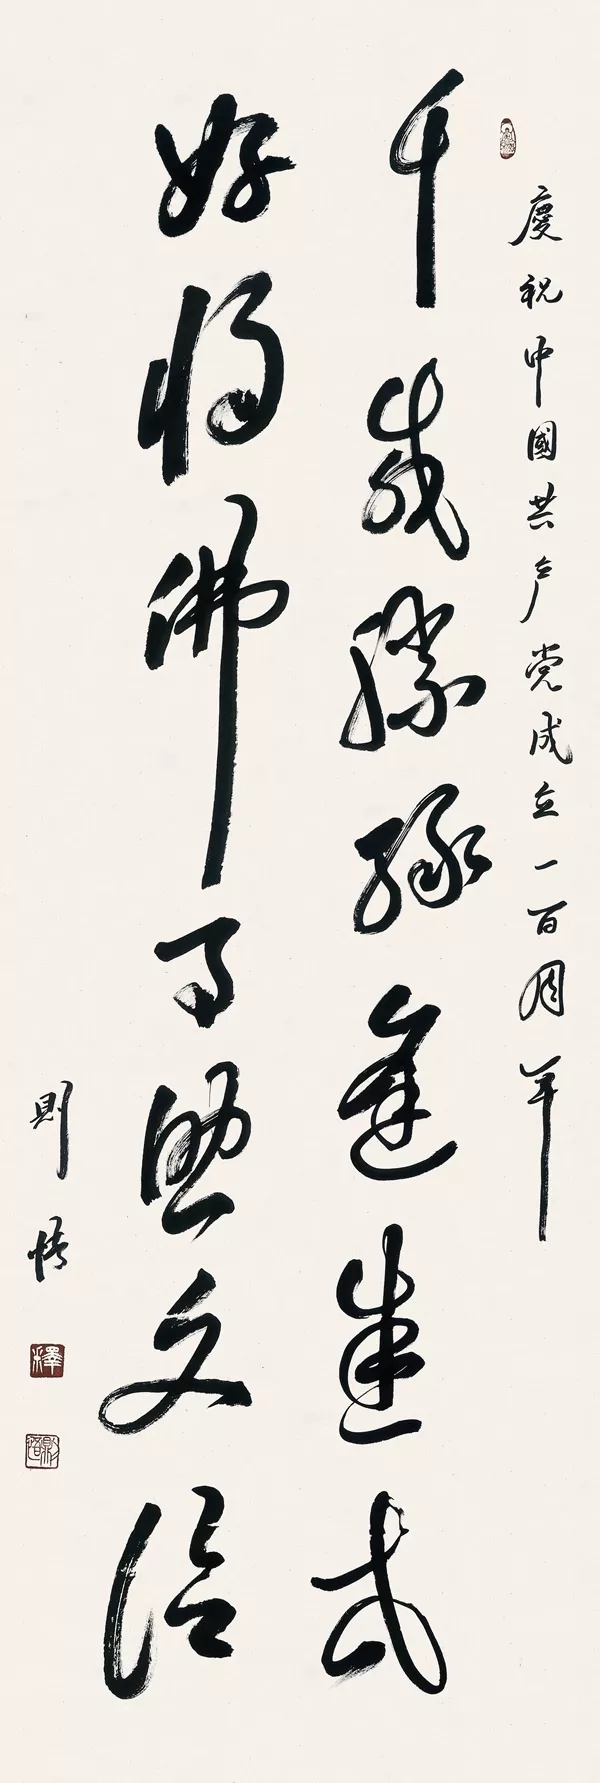 翰墨赞盛世·丹青颂党恩——中国佛教书画邀请展参展部分作品